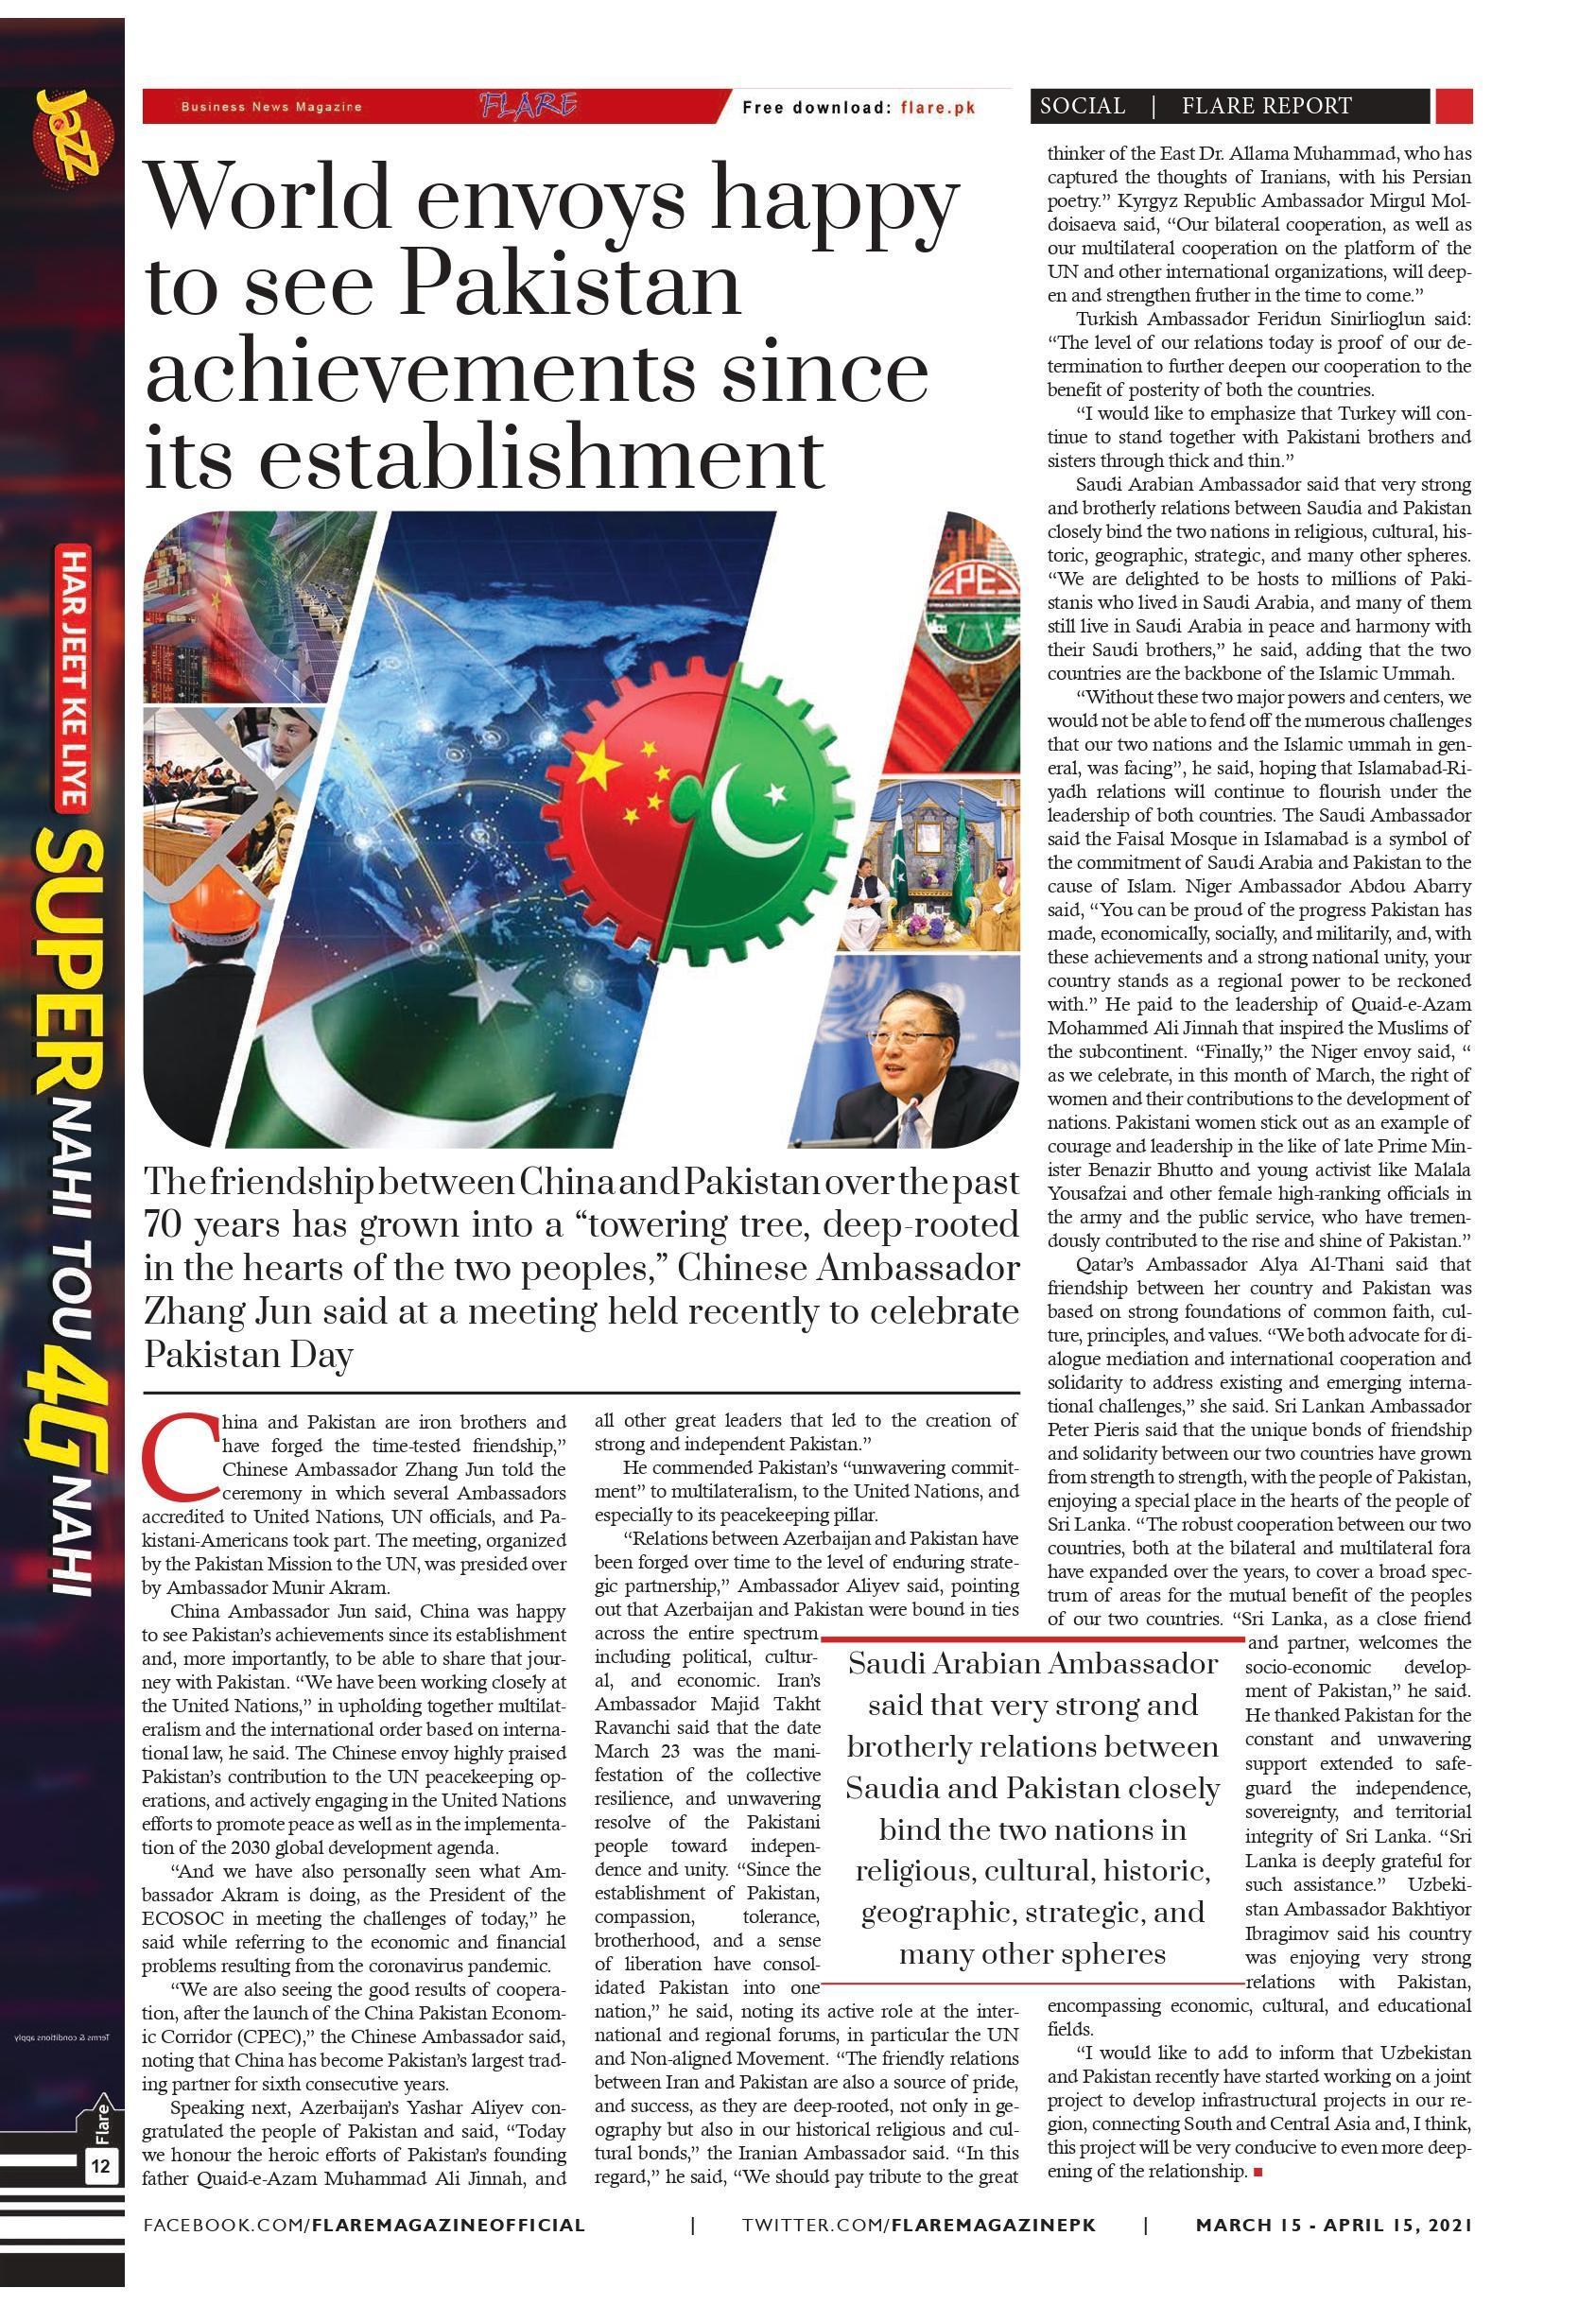 World envoys happy to see Pakistan achievements since its establishment